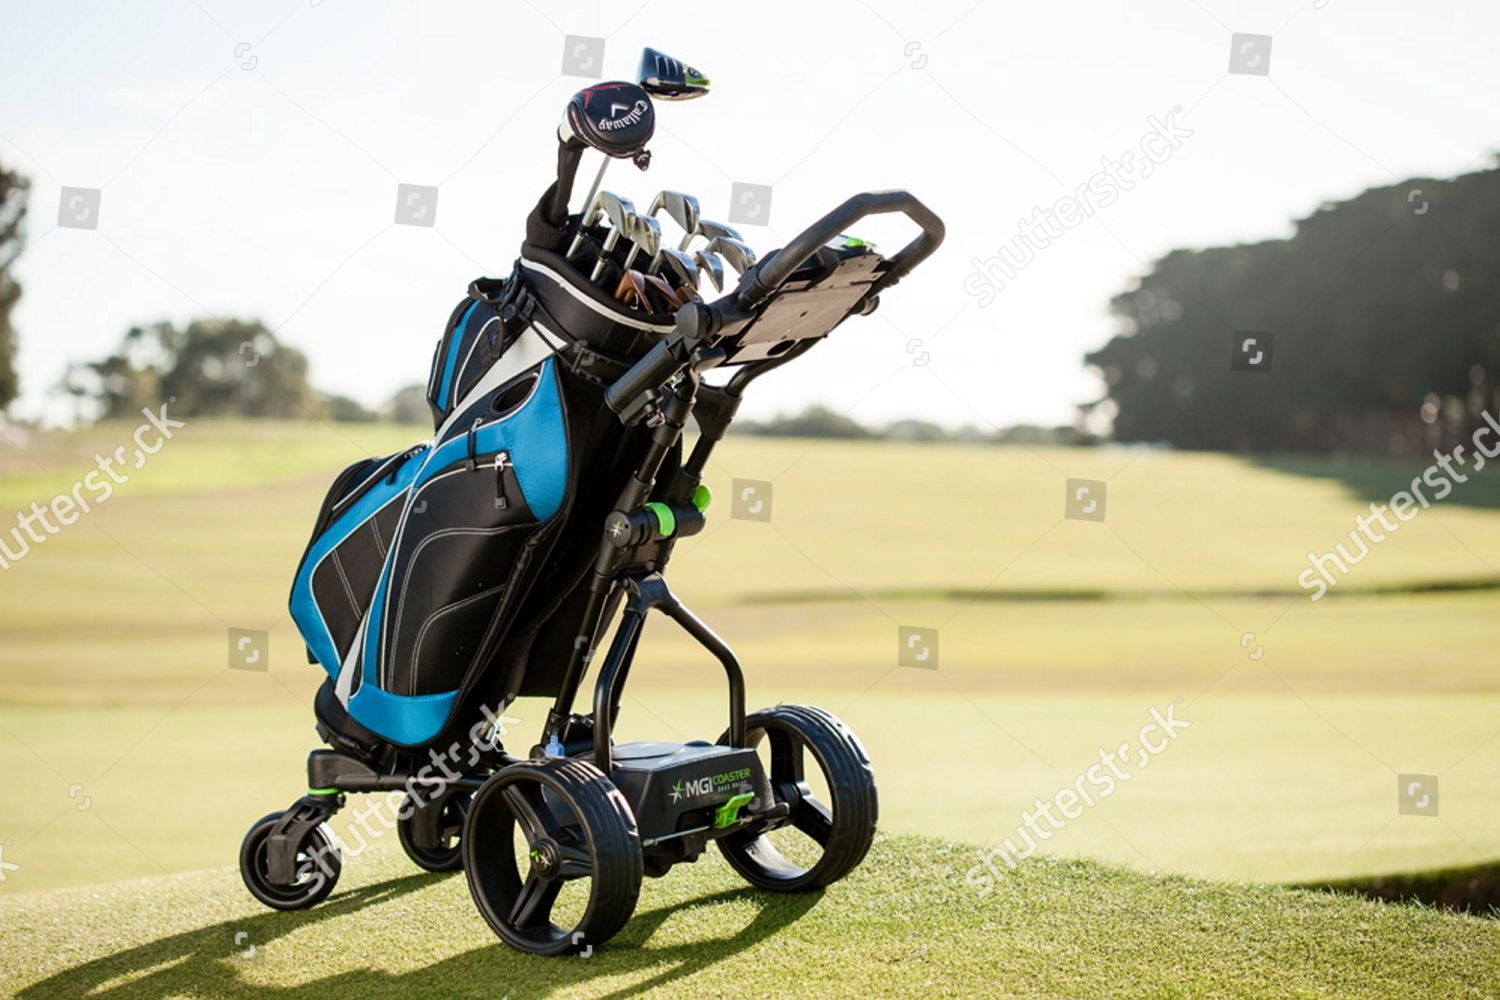 mgi golf trolleys